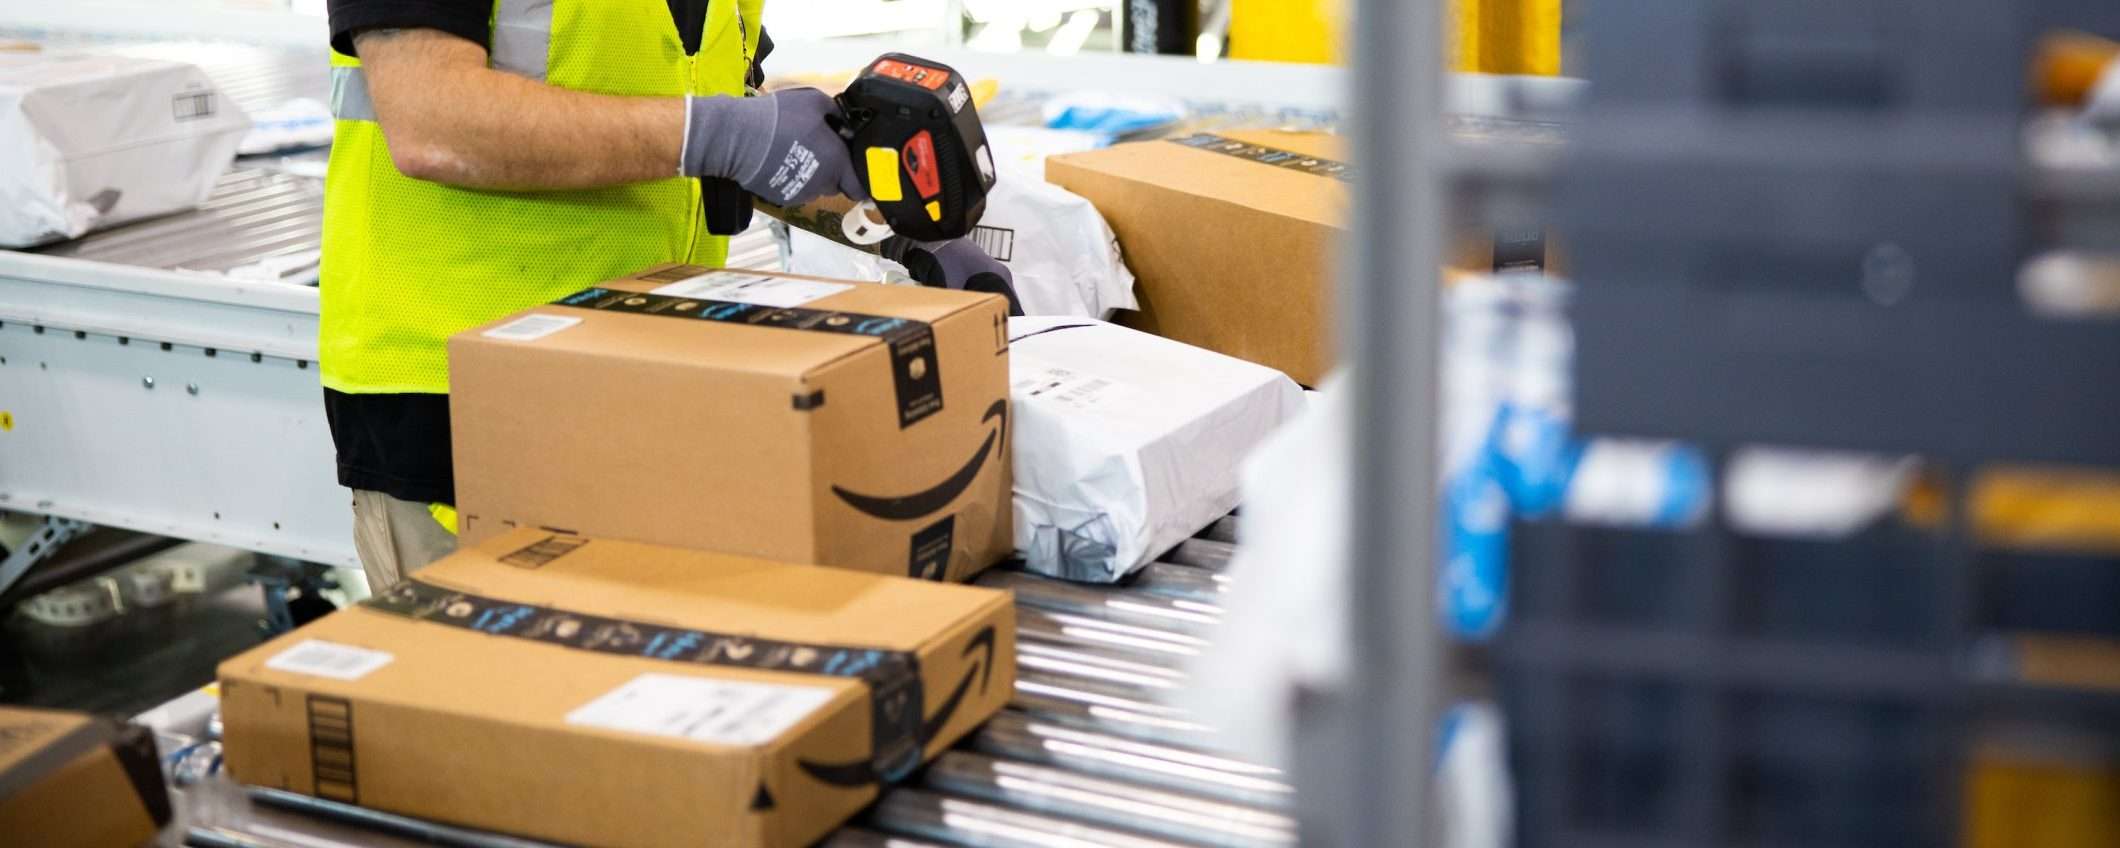 Amazon: possibili tagli di personale anche in Italia